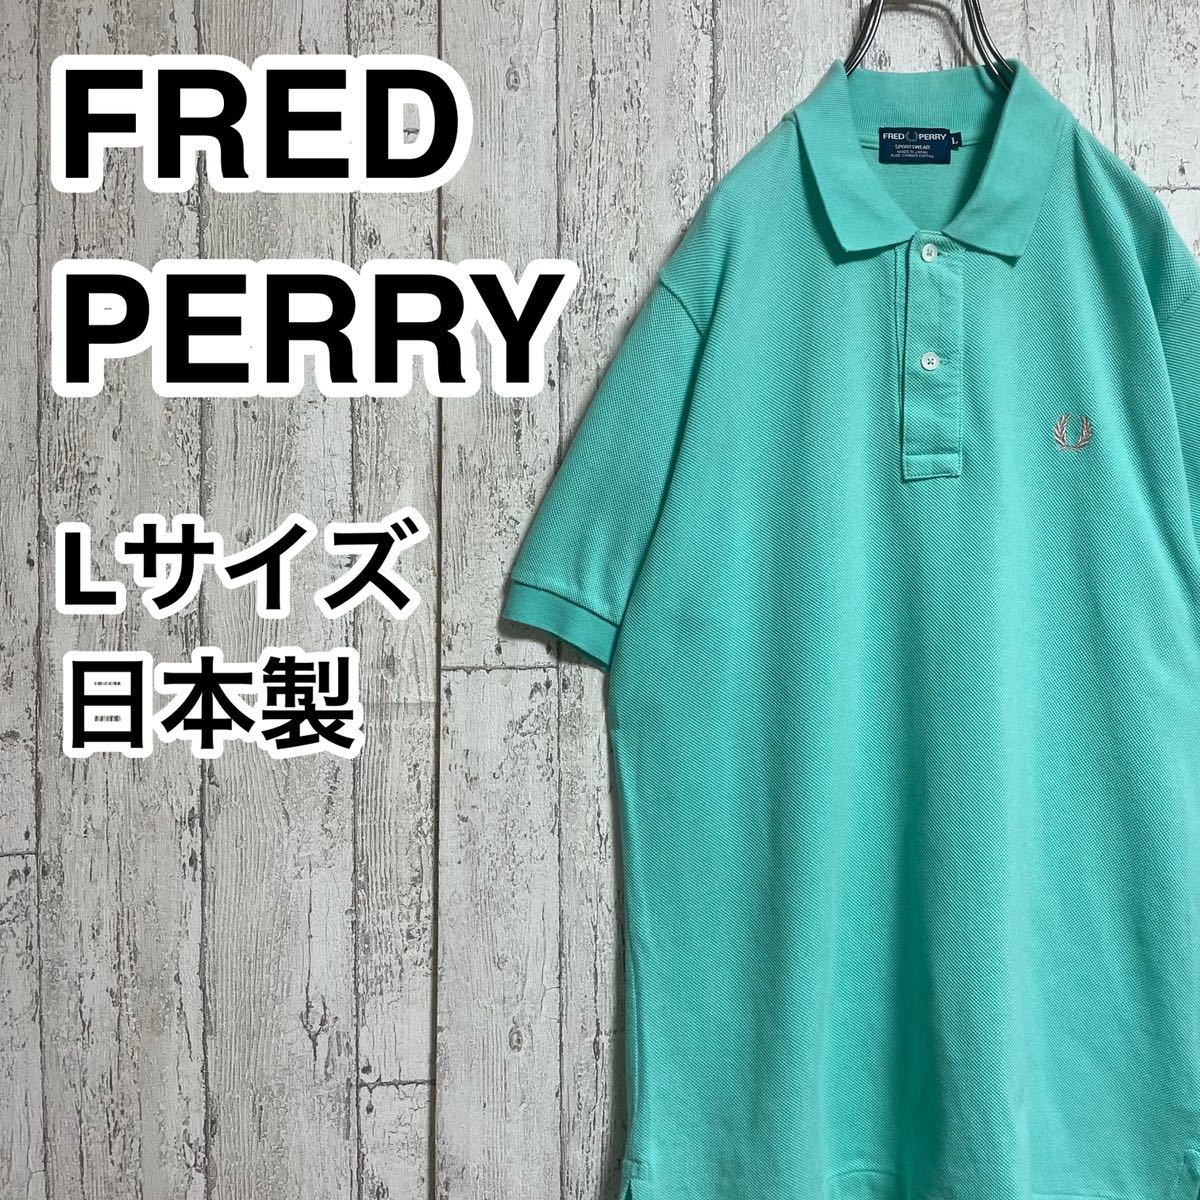 【希少カラー】フレッドペリー FRED PERRY 半袖 ポロシャツ Lサイズ ミントグリーン 日本製 刺繍ロゴ